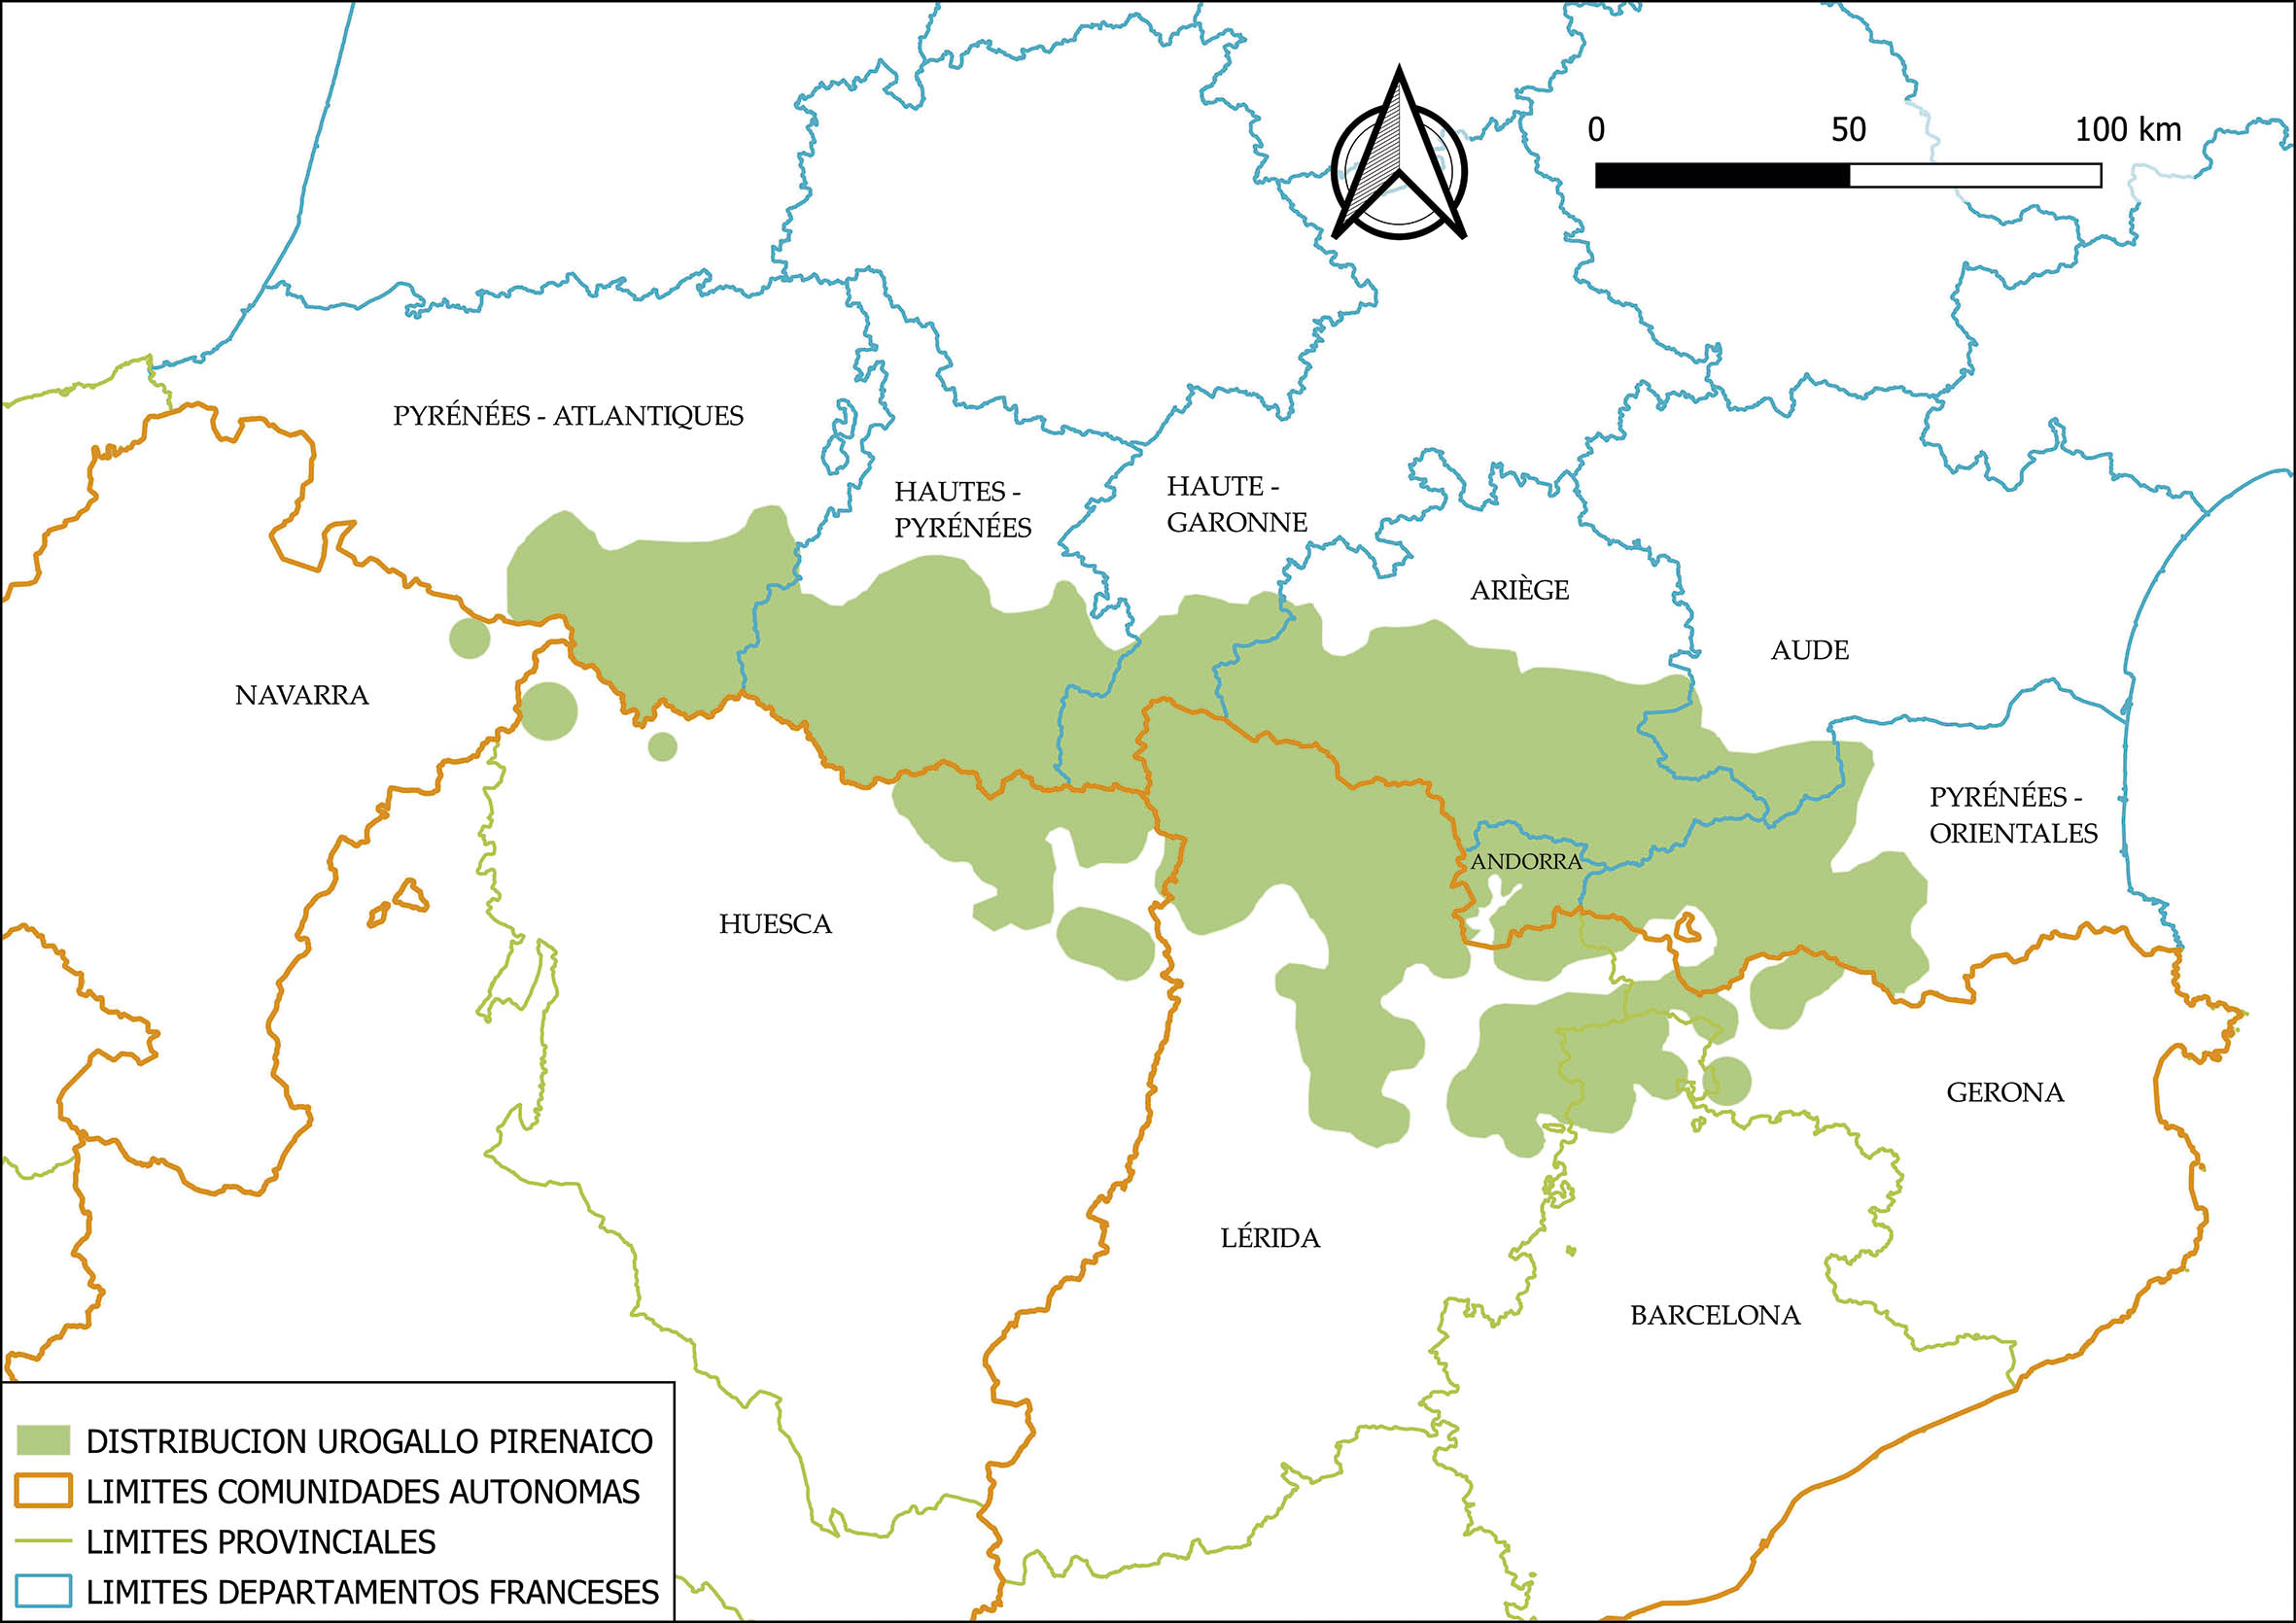 Mapa distribución del urogallo pirenaico en España, Francia y Andorra